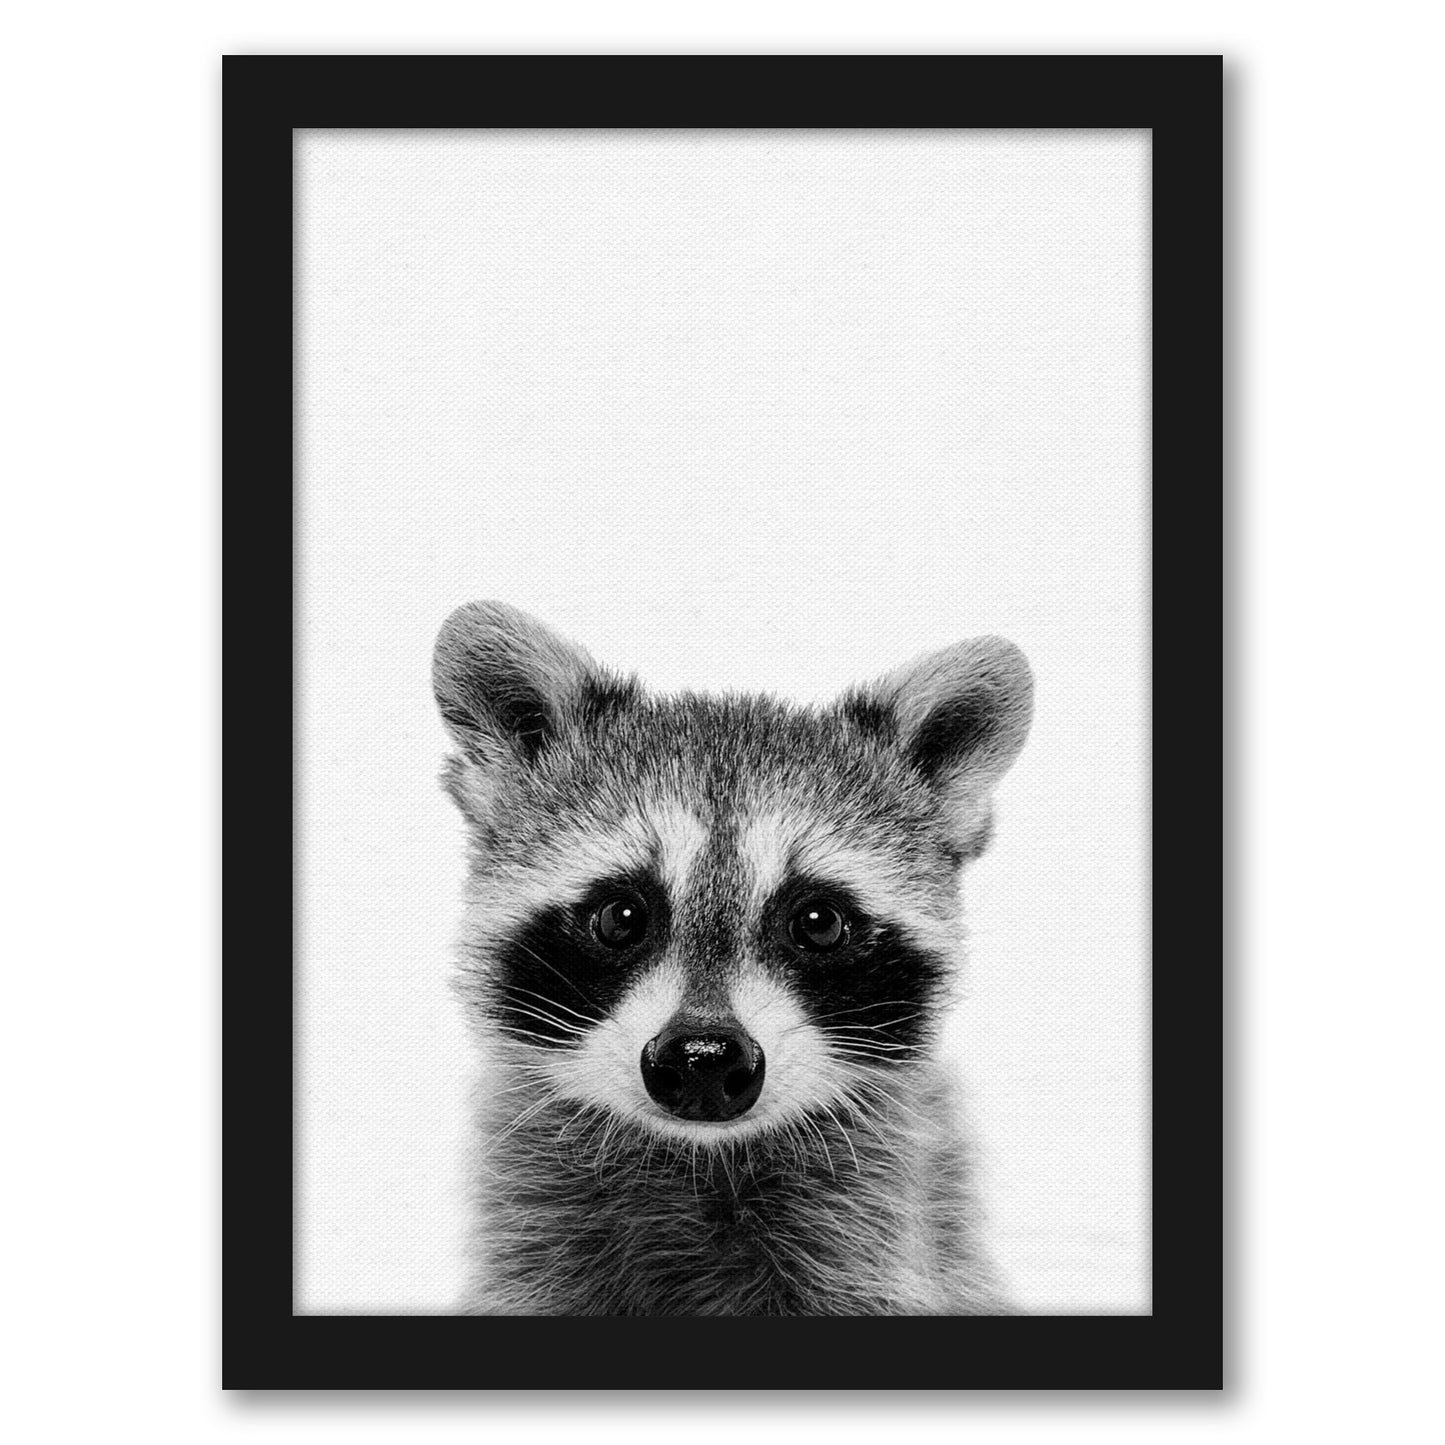 Raccoon By Nuada - Framed Print